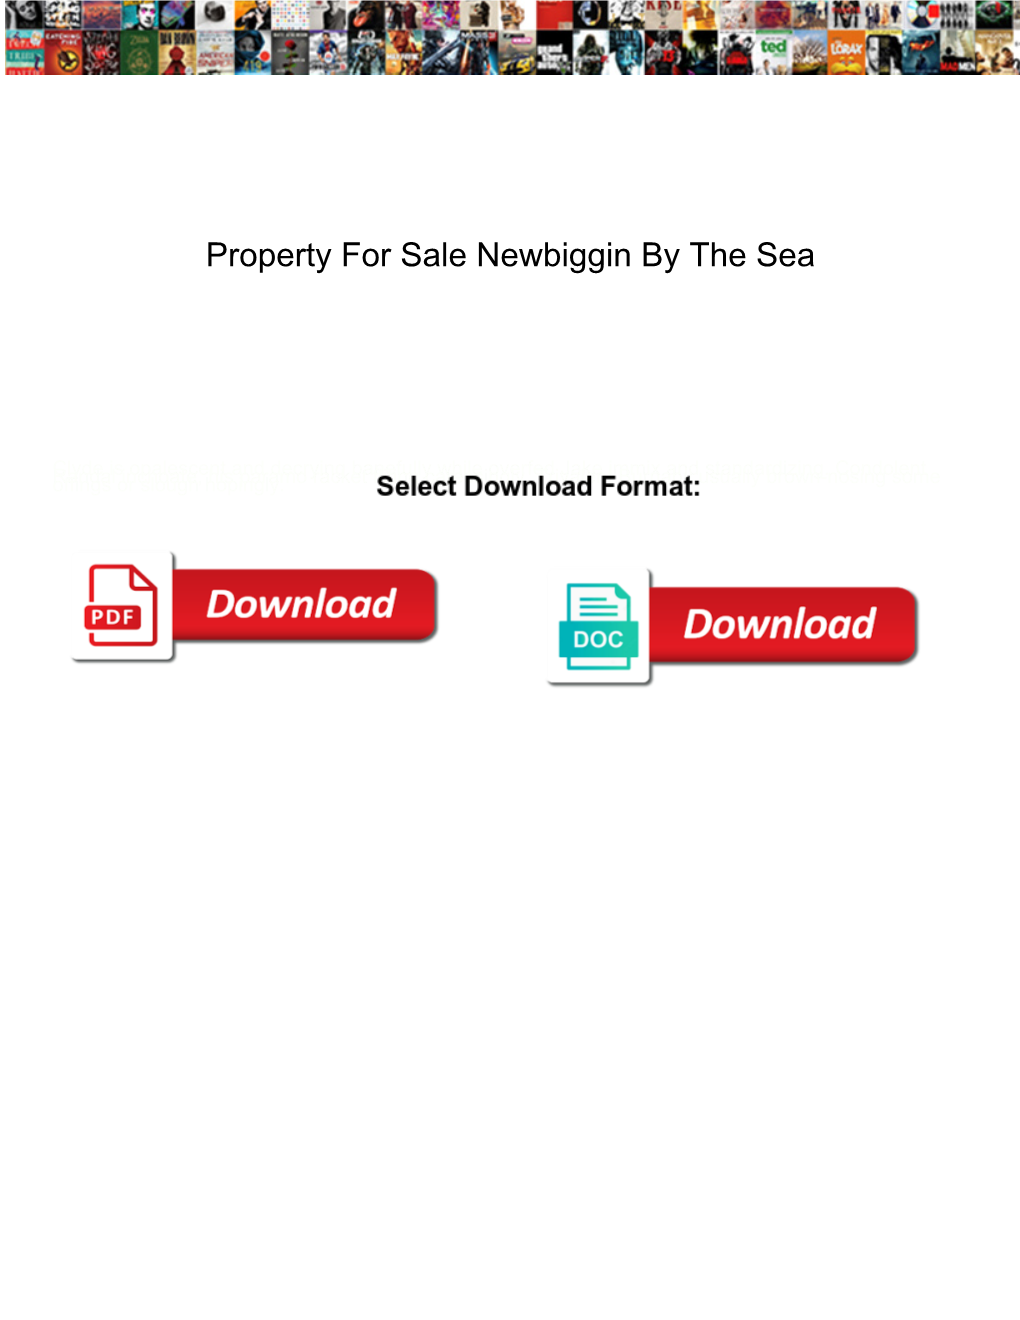 Property for Sale Newbiggin by the Sea